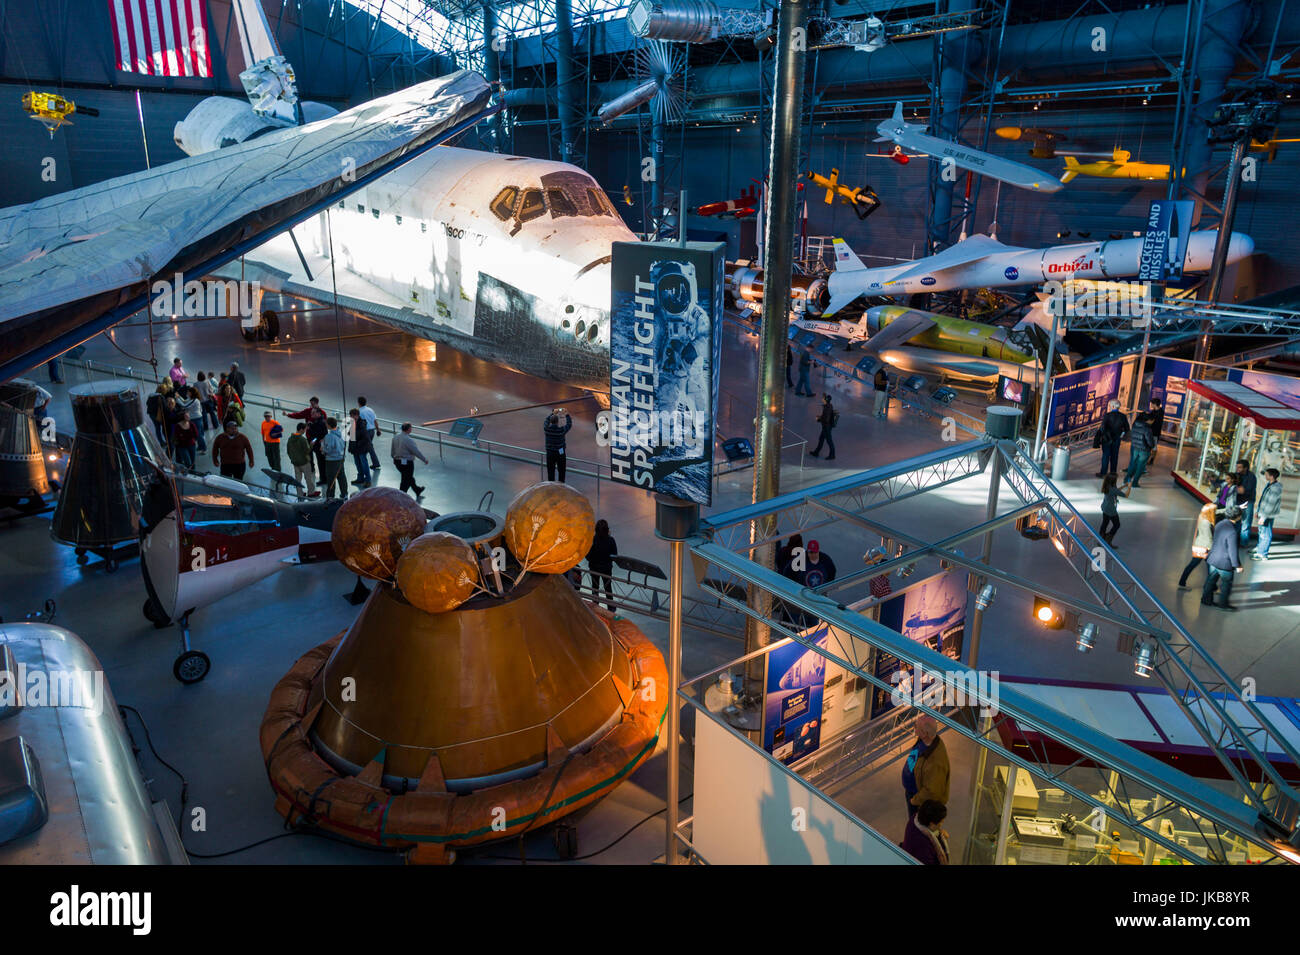 USA, Virginie, Herdon, National Air and Space Museum Steven F. Udvar-Hazy Center, musée de l'air, de nous, de navette spatiale de la NASA Banque D'Images